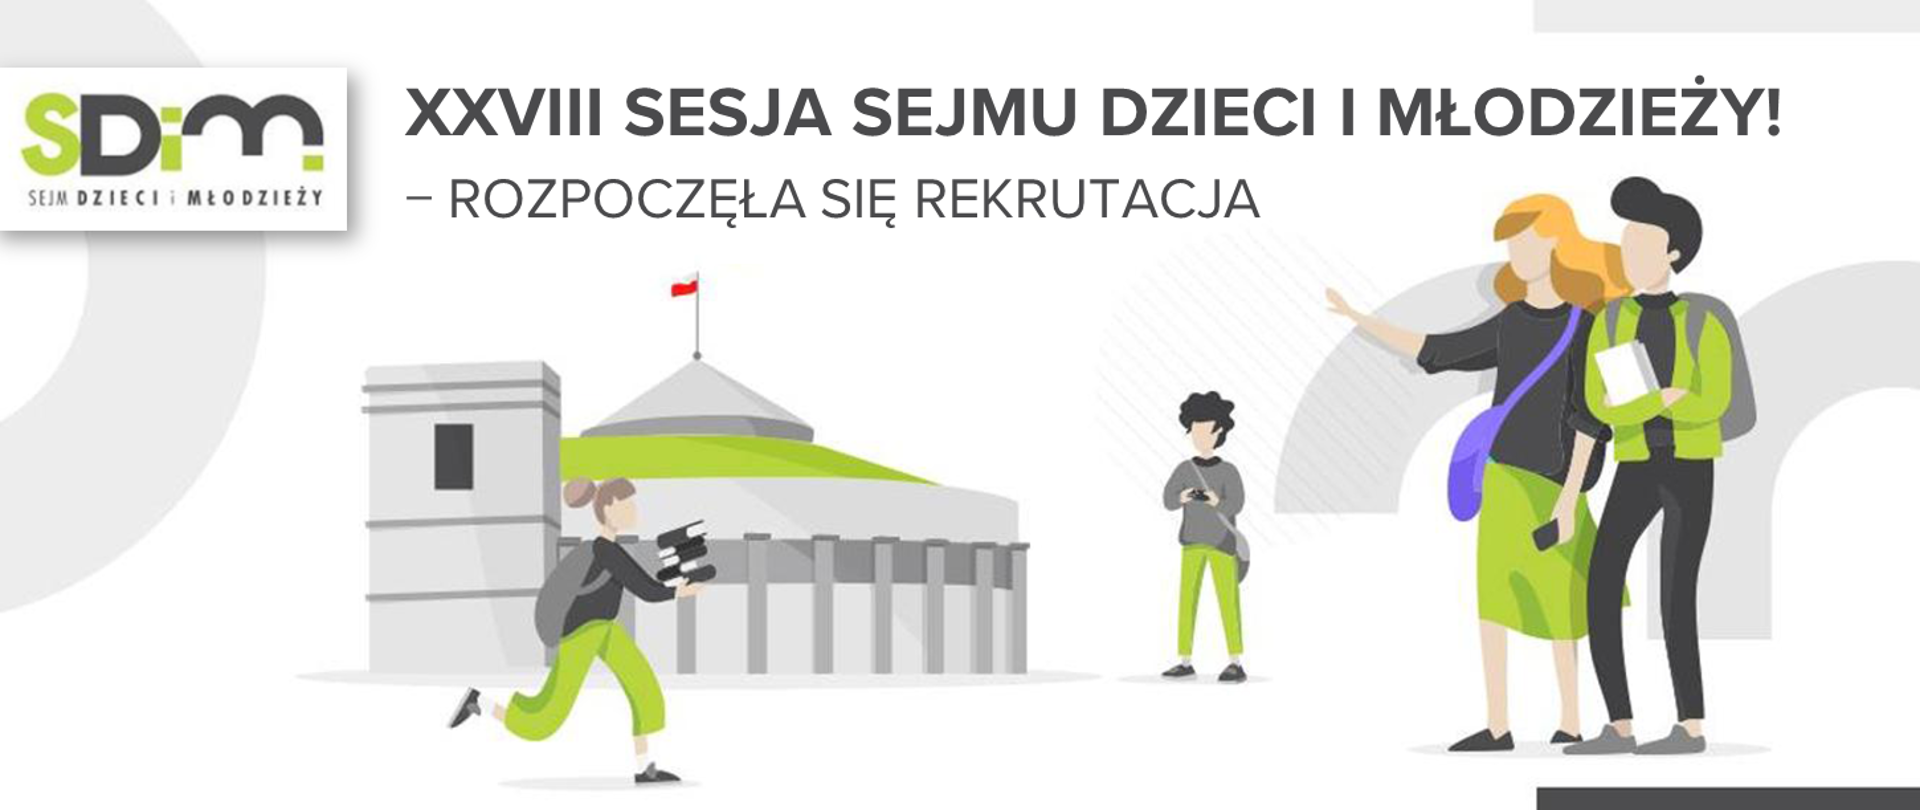 Ilustracja dzieci i młodzieży, a w tle sejm. Obok napis: "XXVIII Sesja Sejmu Dzieci i Młodzieży − rozpoczęła się rekrutacja"